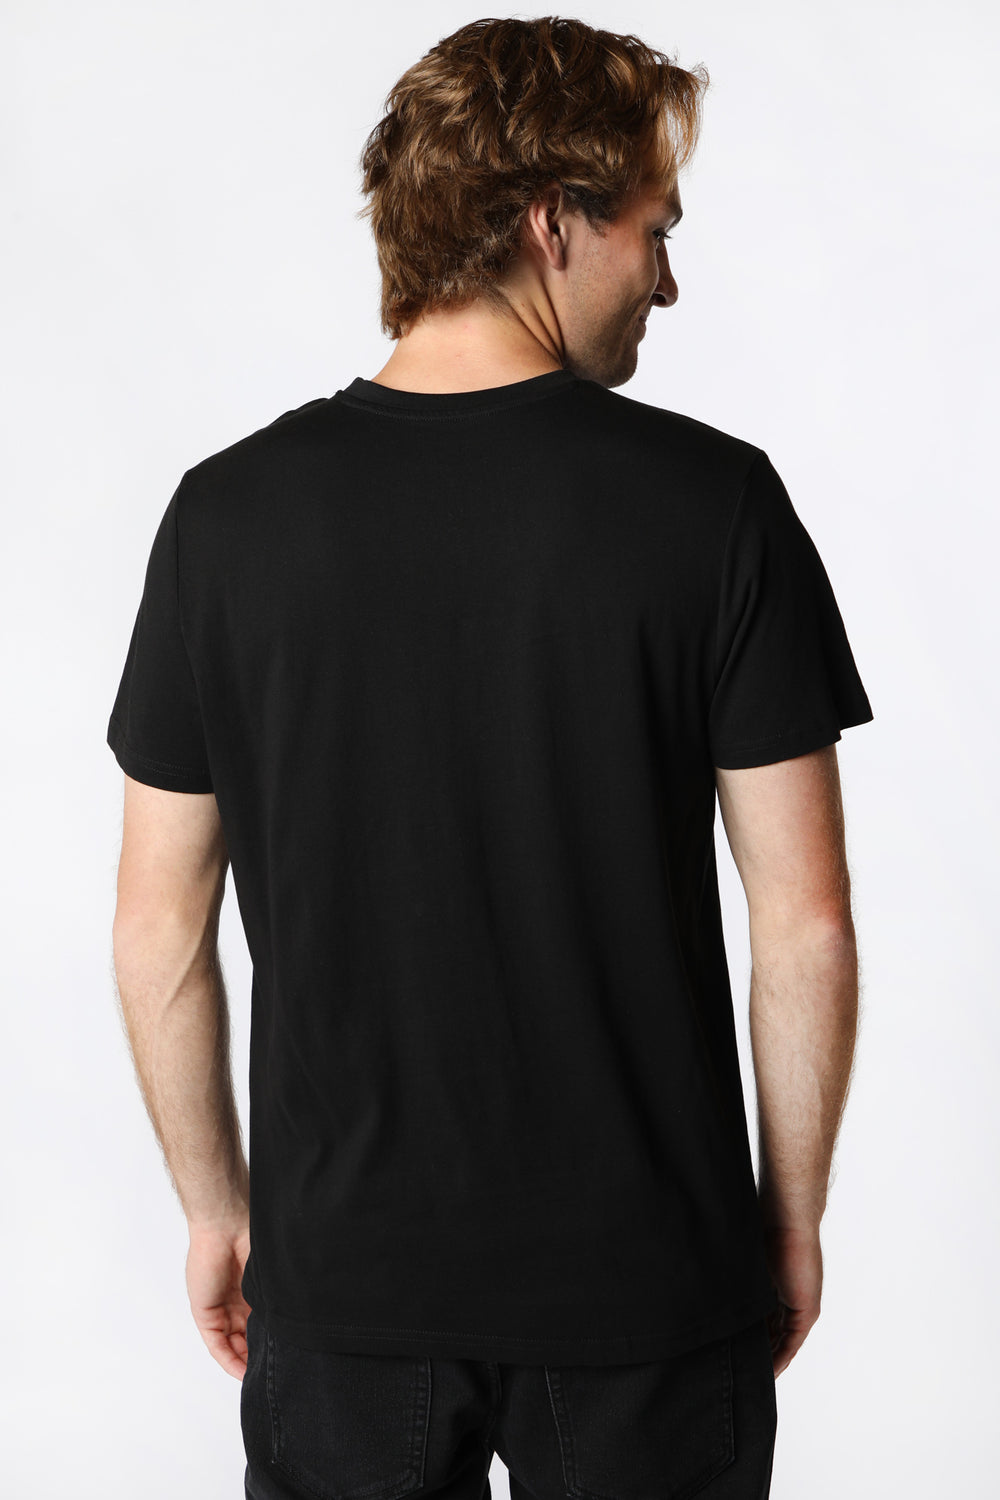 T-Shirt Imprimé Bronco Homme Noir